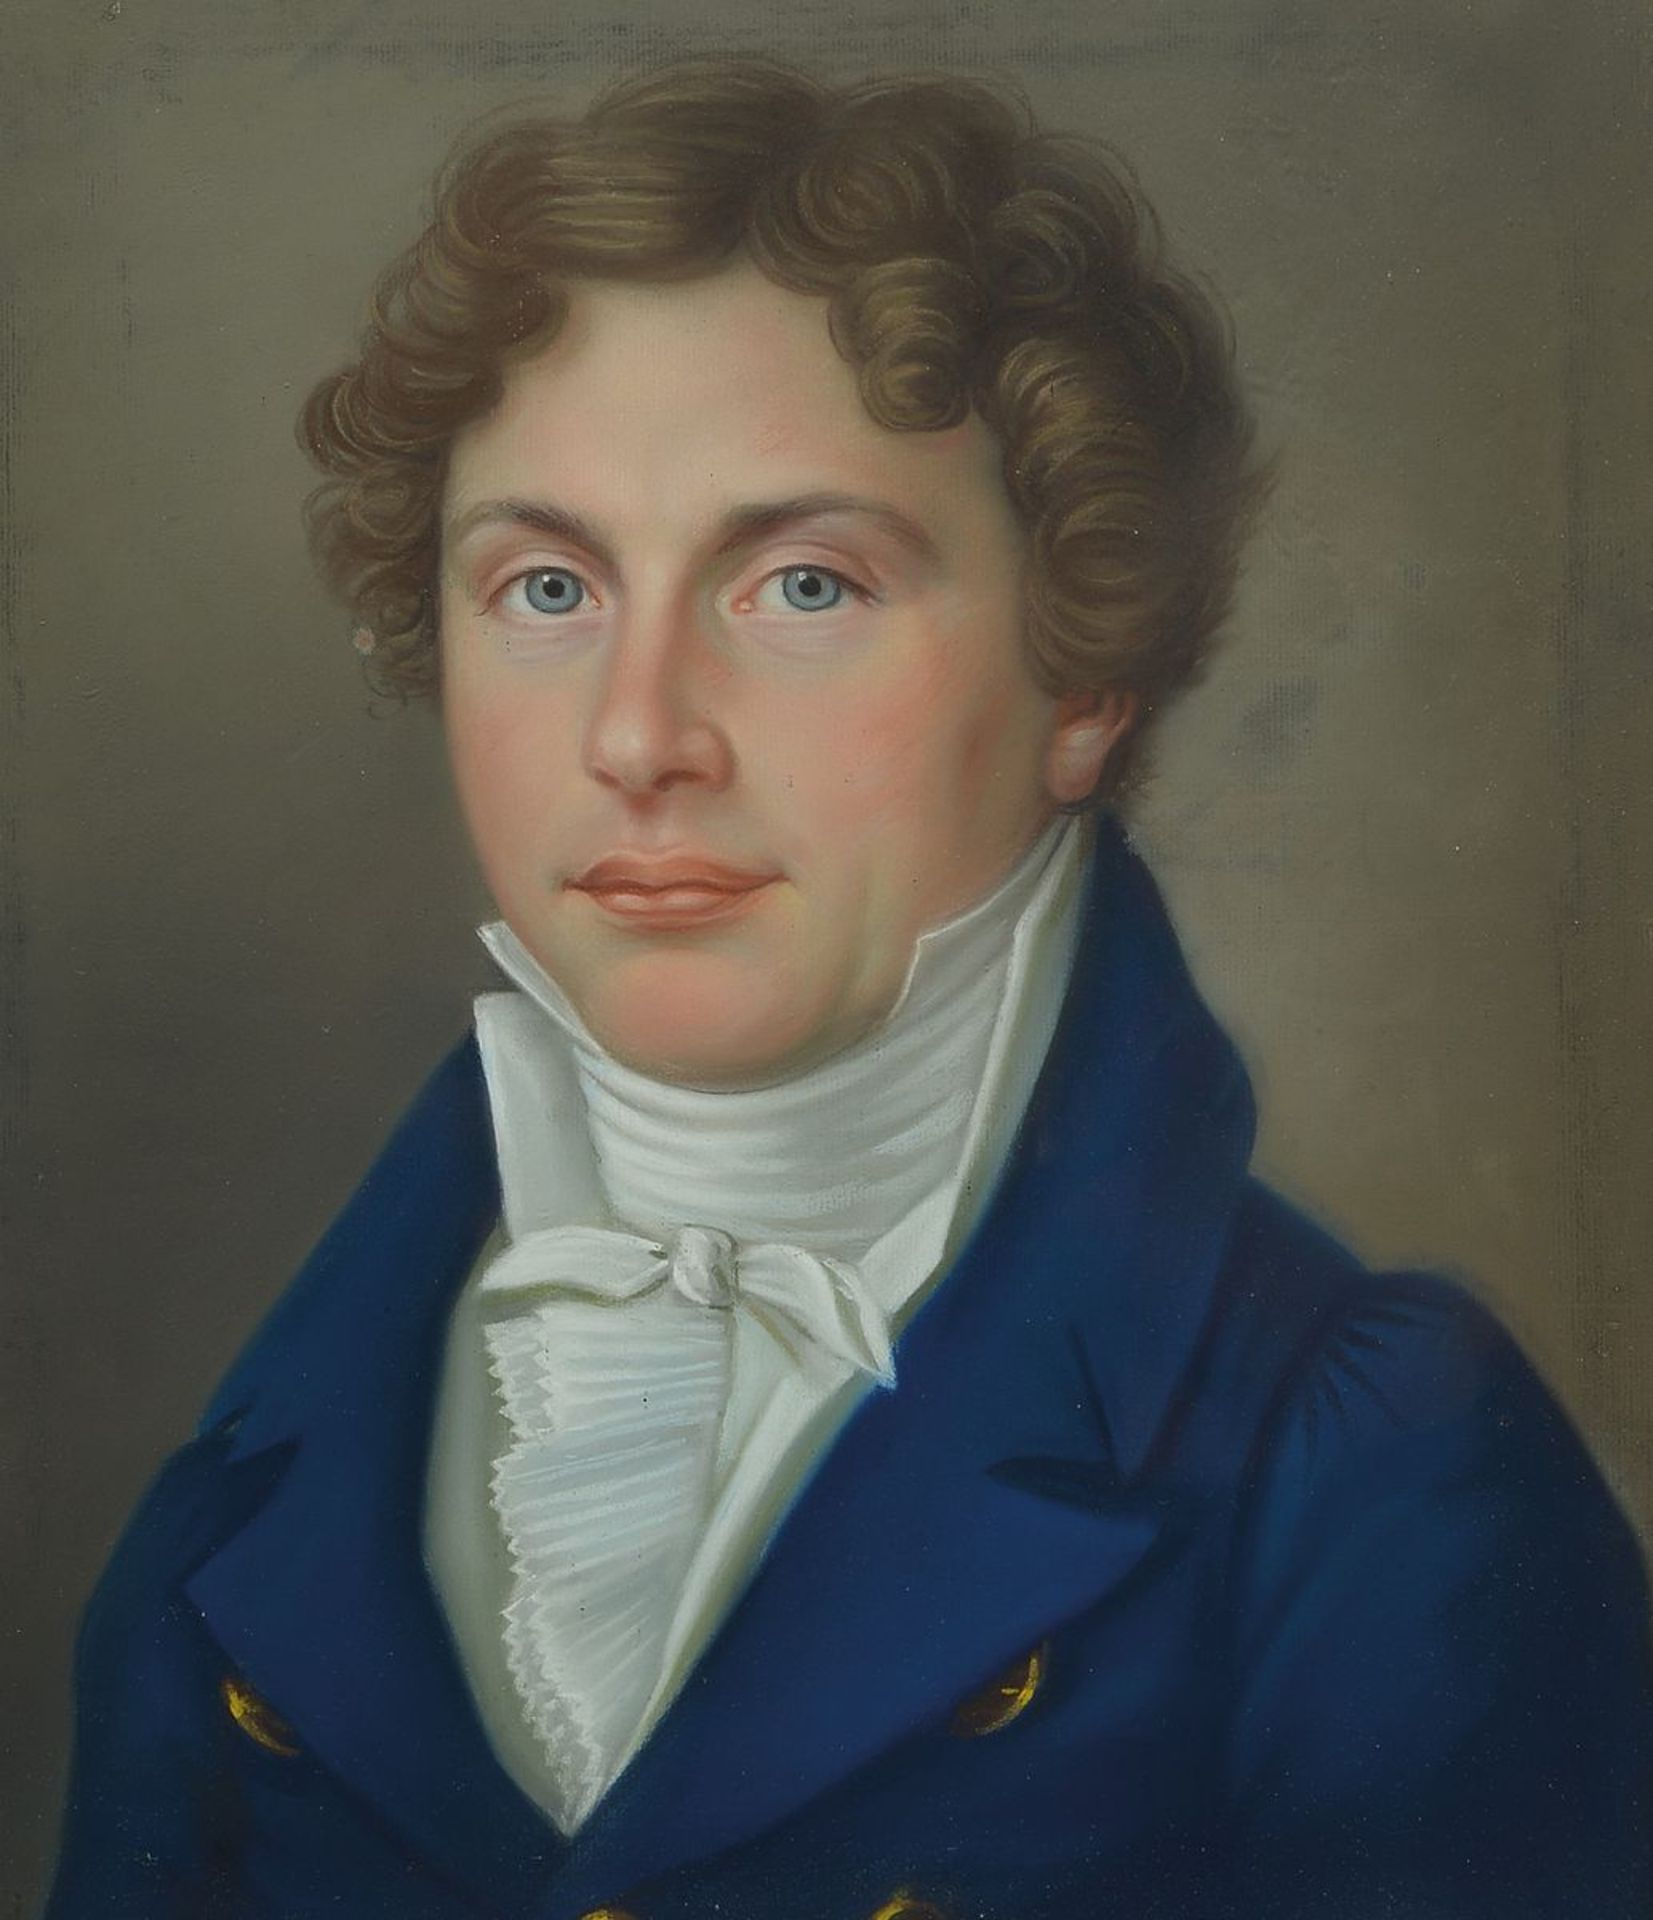 Unbekannter Künstler des Biedermeier, um 1830-40, Porträt eines Mannes, den Betrachter anschauend,